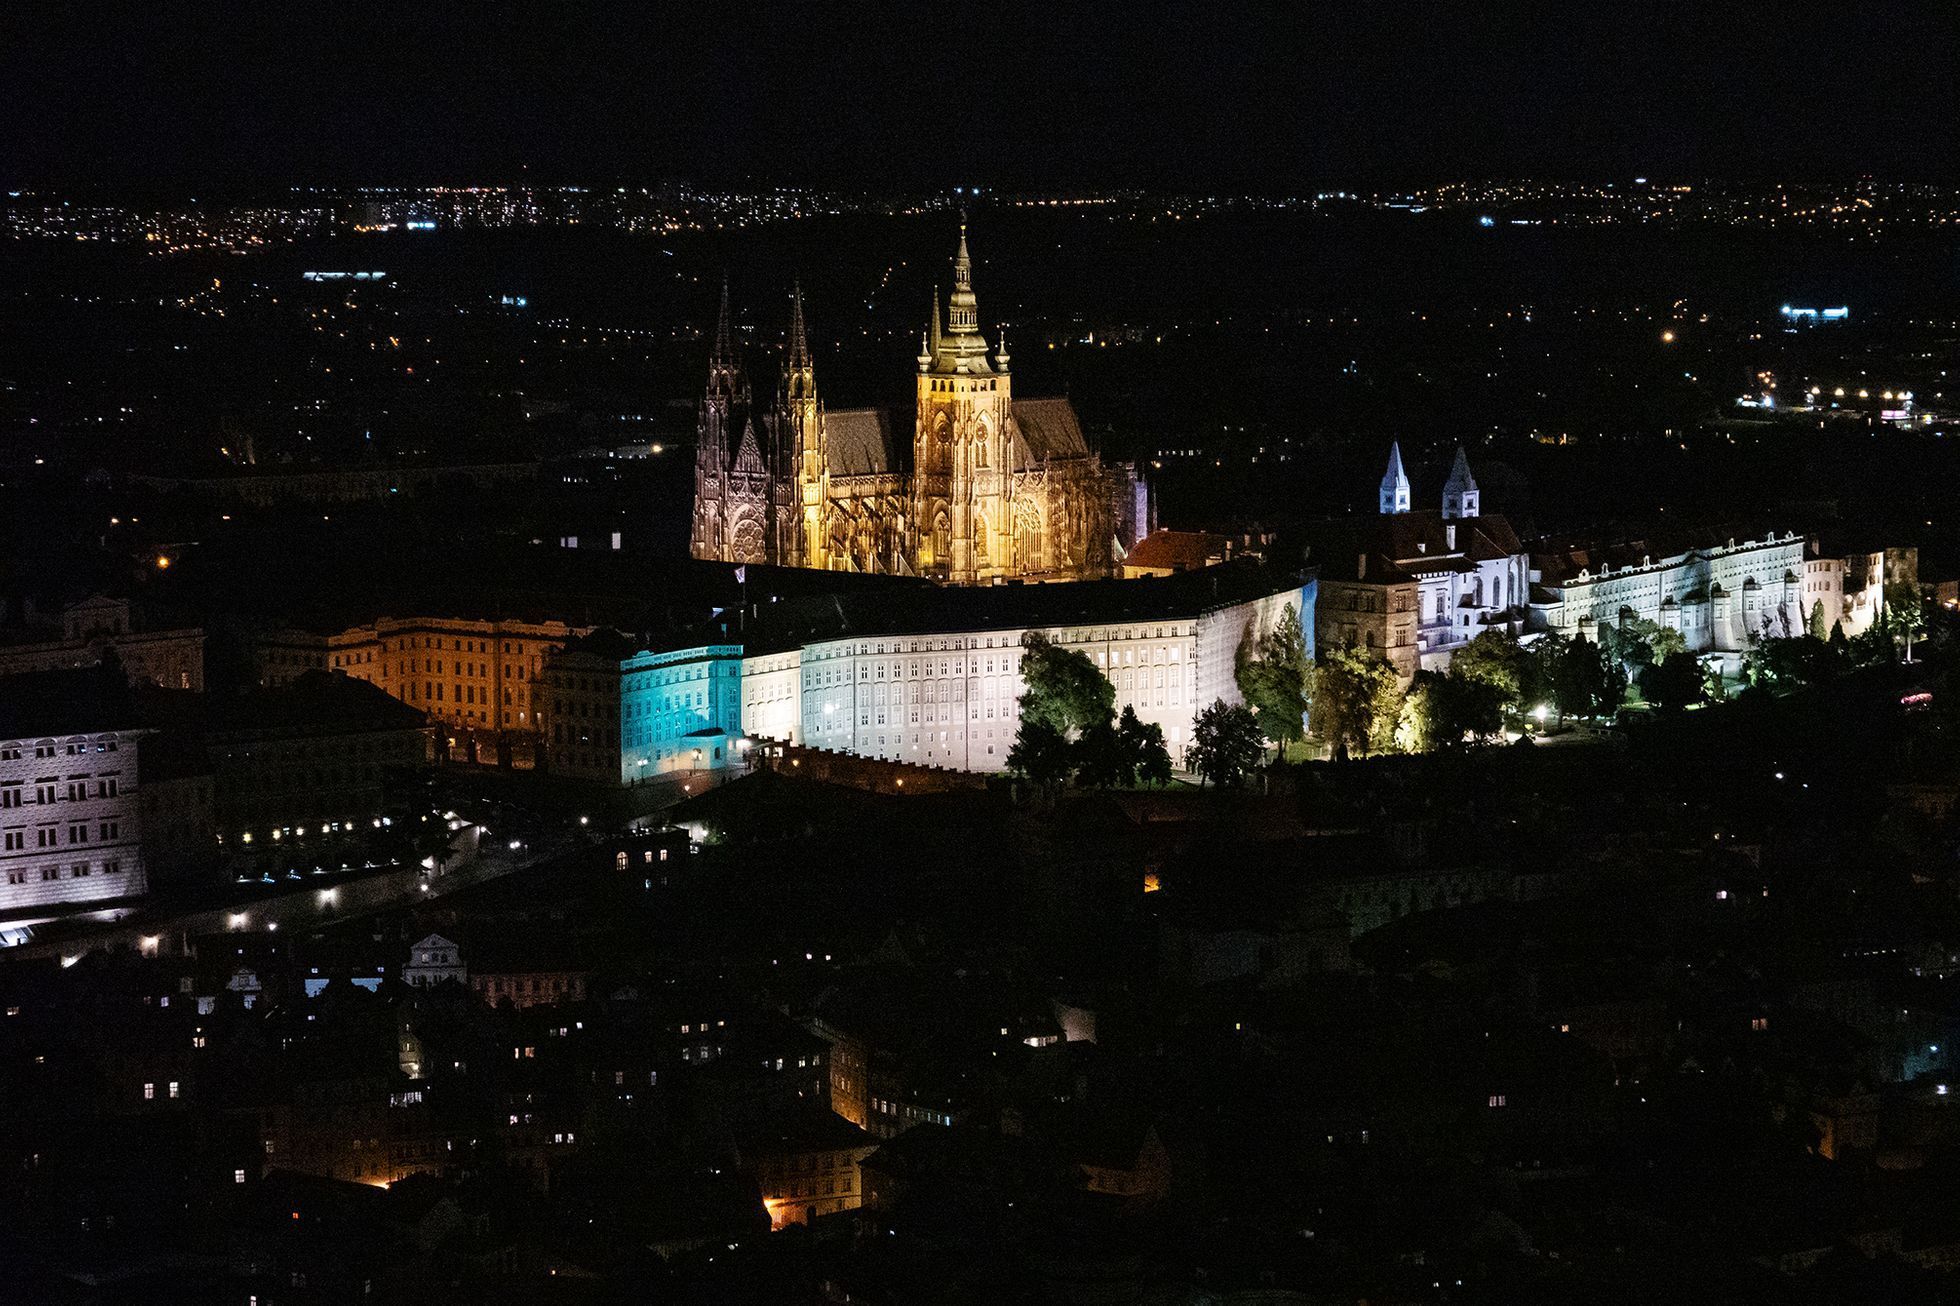 Večerní Praha. Fotozápisník Tomáše Vocelky